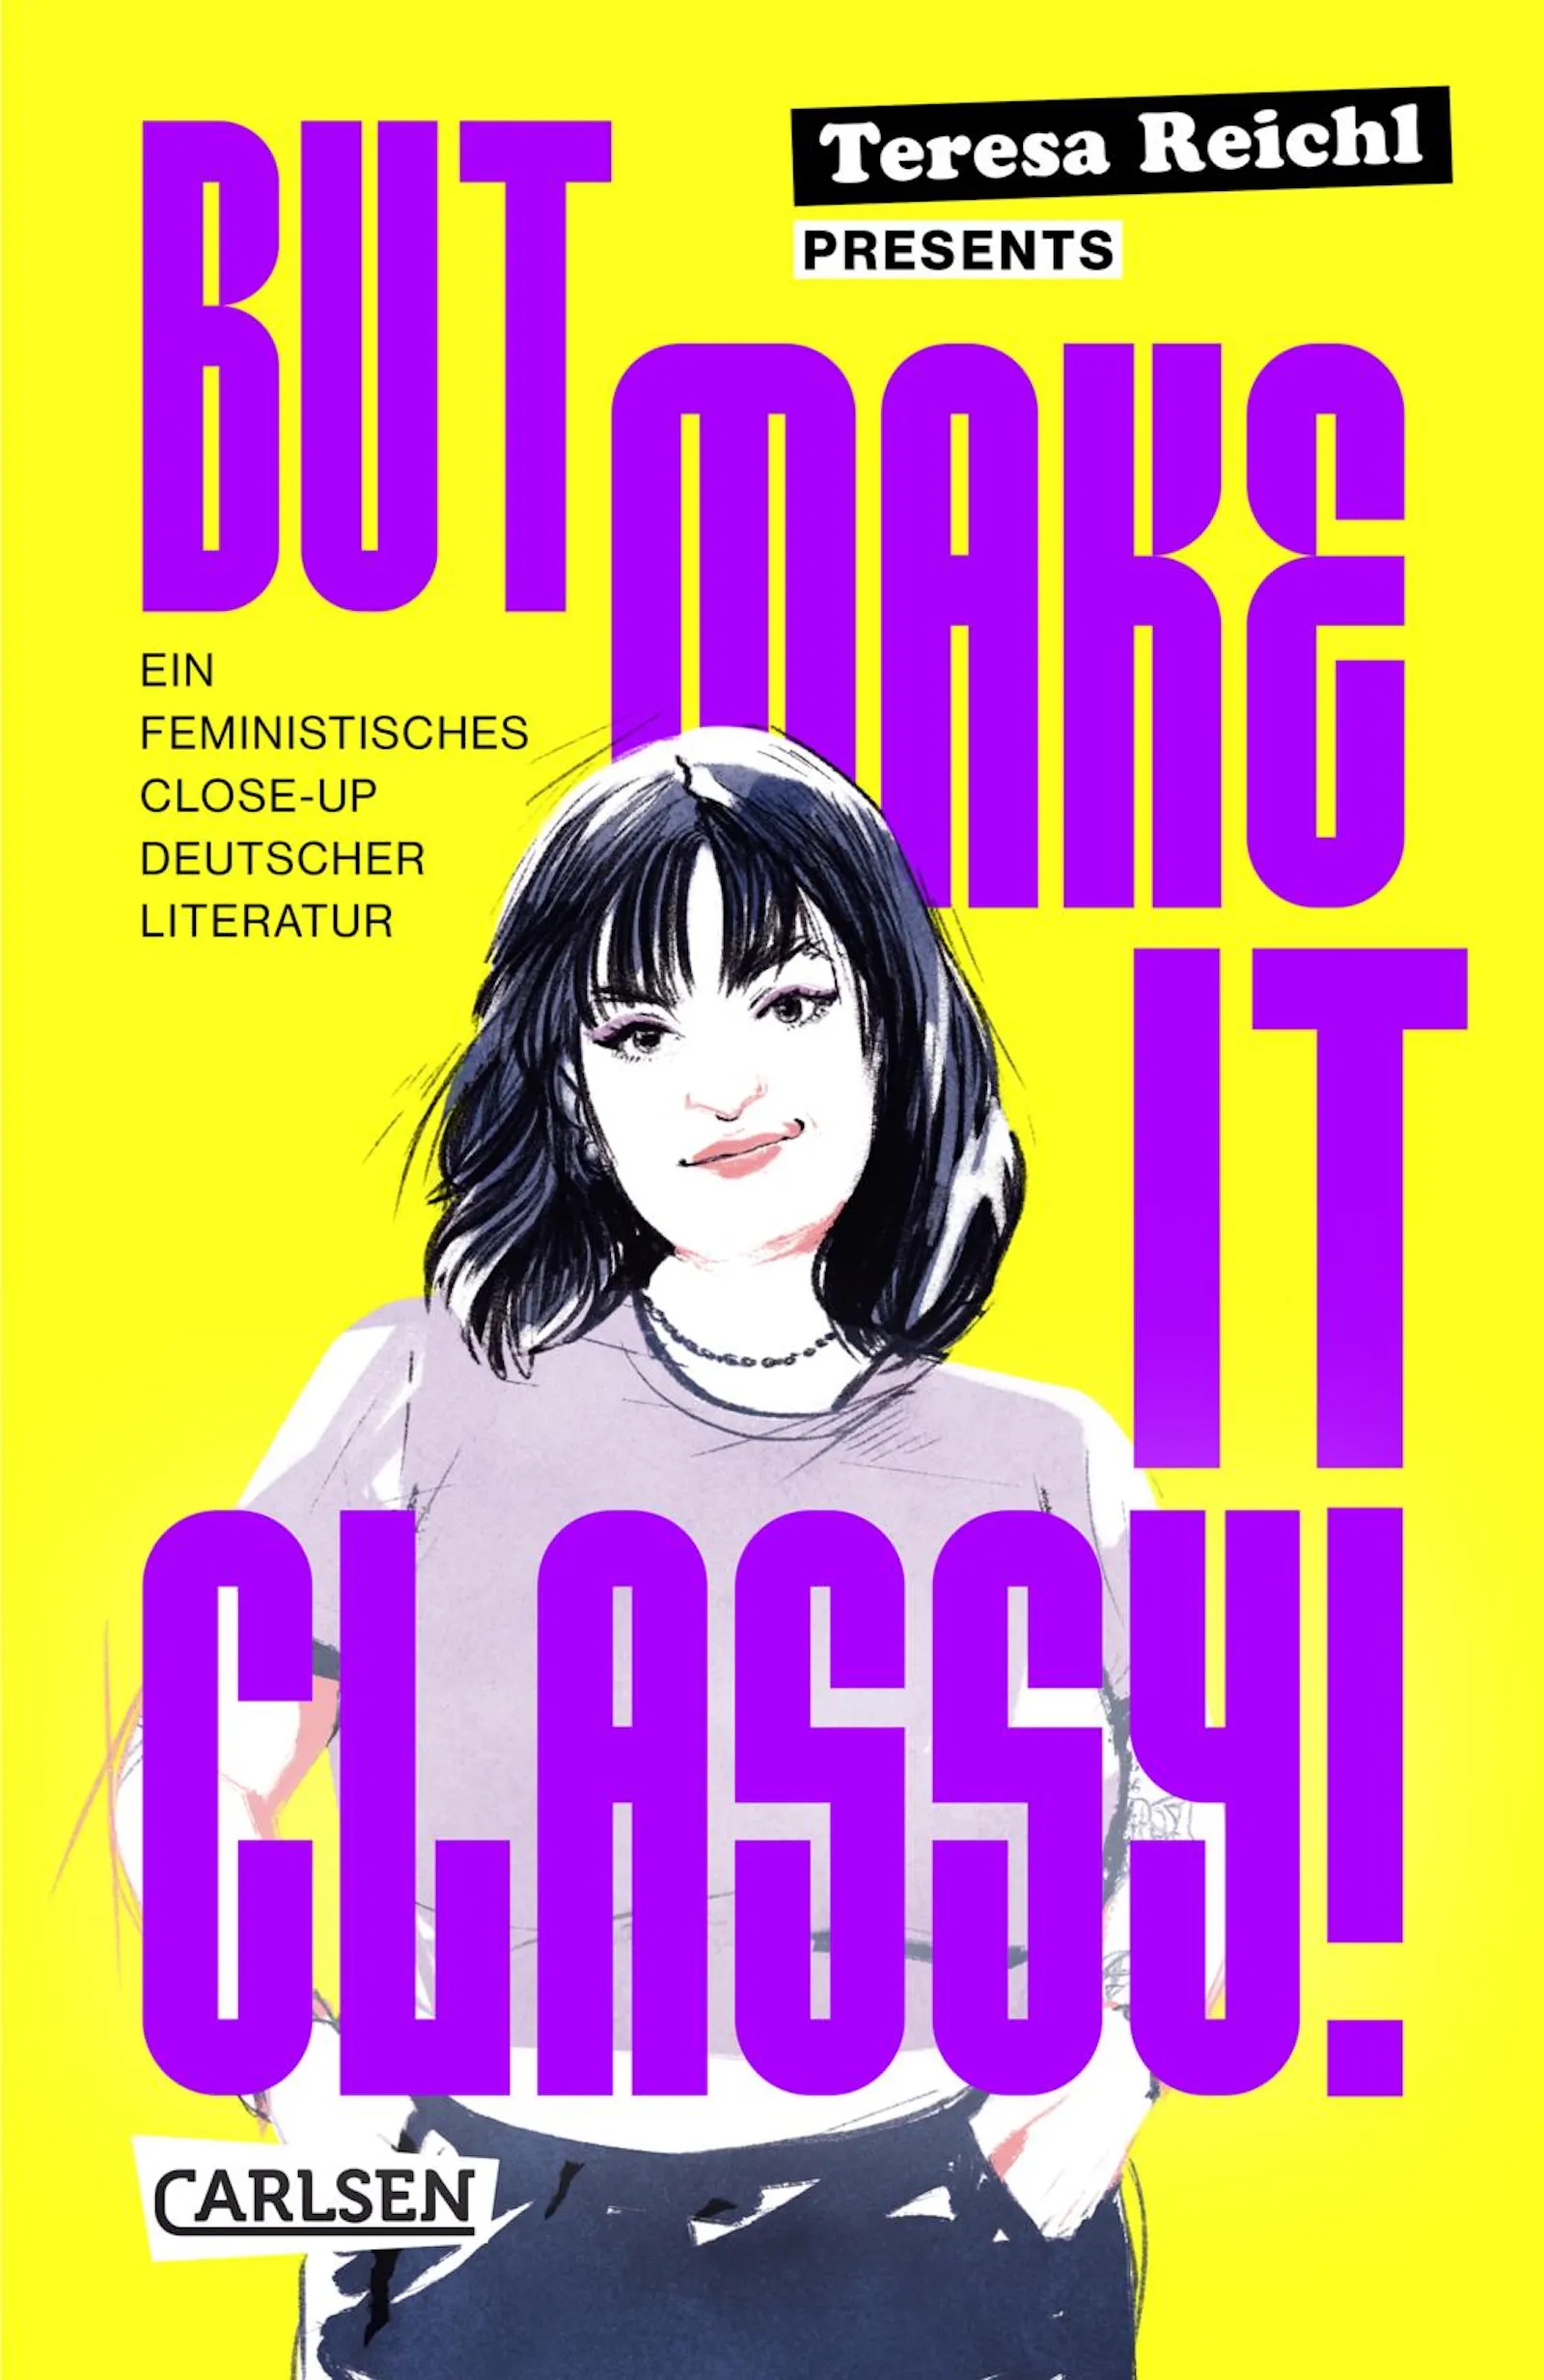 Cover von "But make it classy!" von Teresa Reichl. Violette Schrift auf Gelben Hintergrund, eine Illustration von Teresa, die mit den Händen in den Taschen zwischen den Buchstaben des Titels steht.